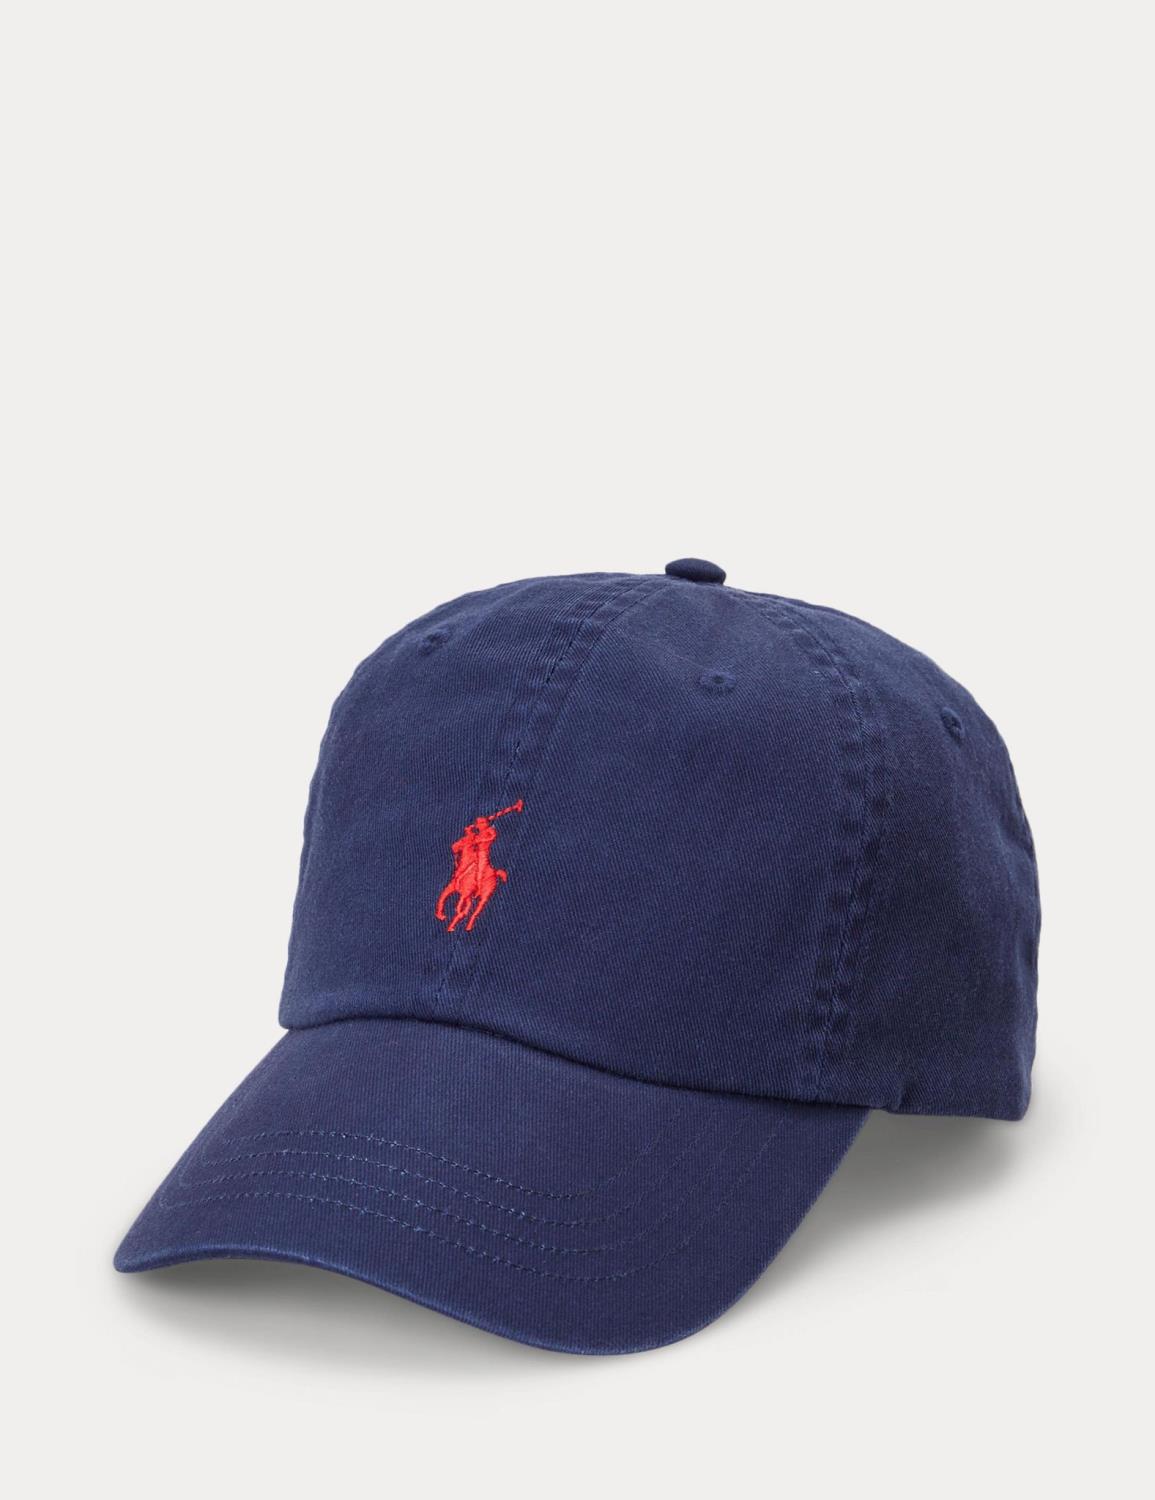 Polo Ralph Lauren caps - Newport Navy/Red